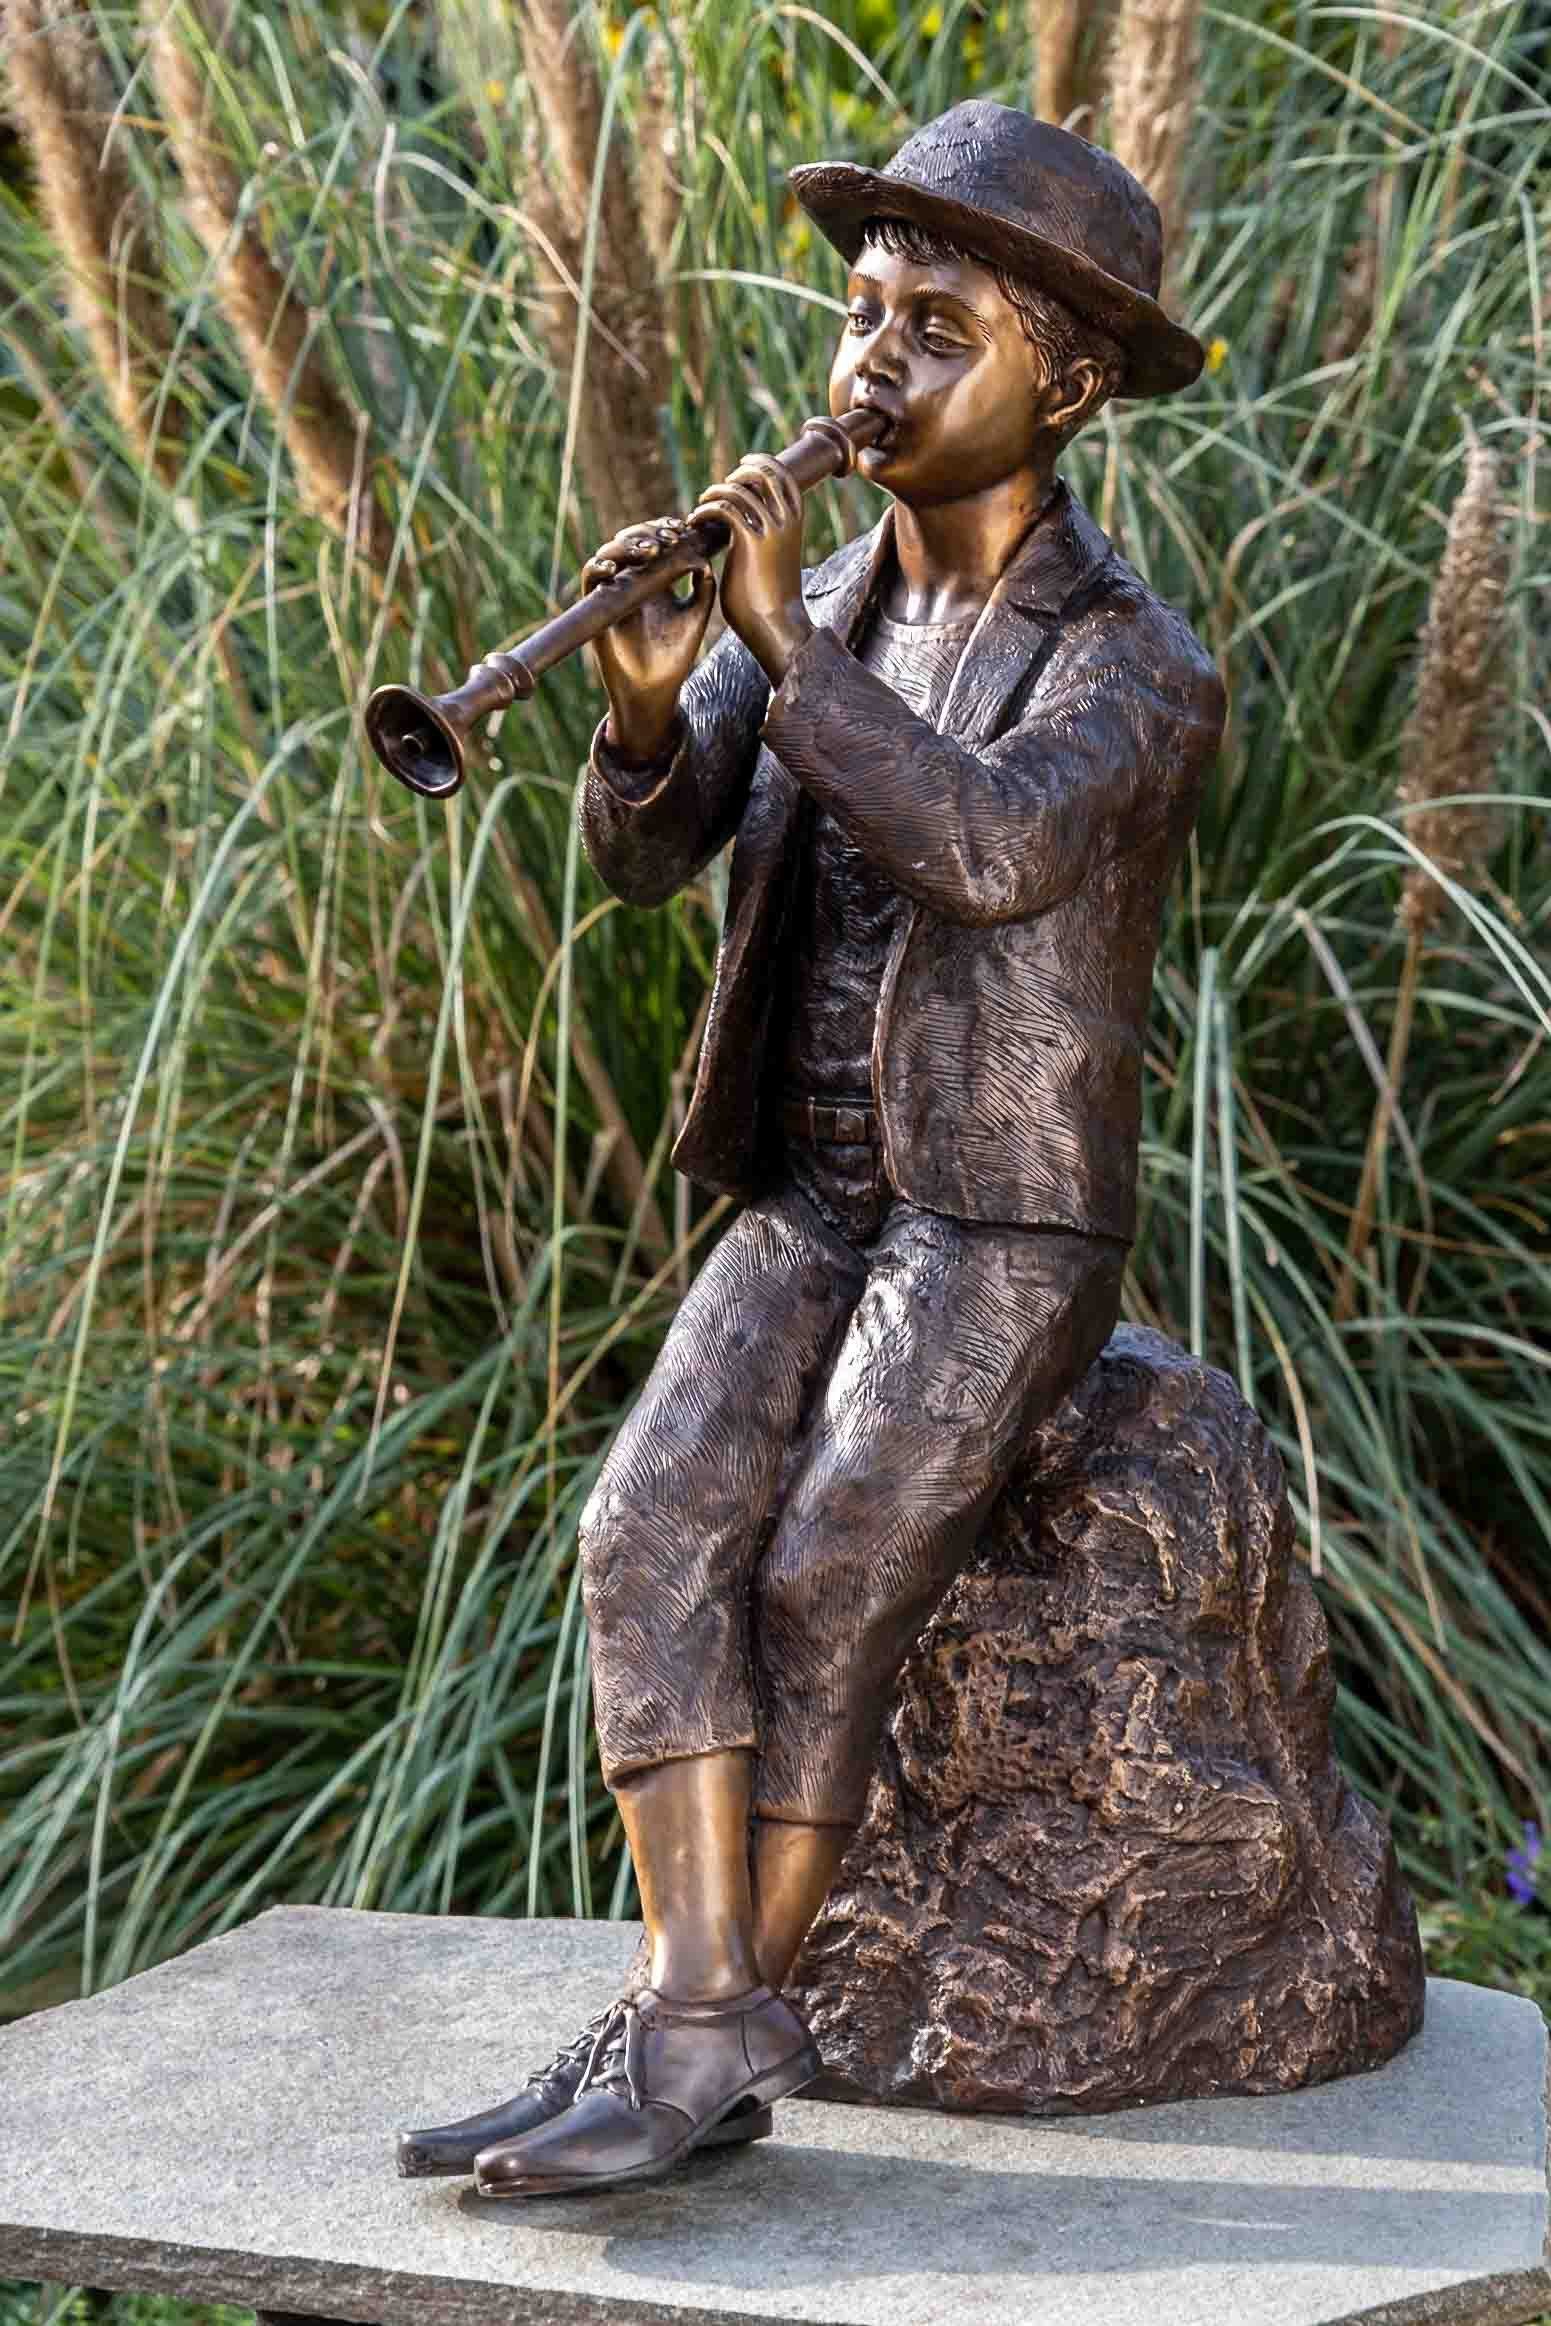 IDYL Gartenfigur IDYL Bronze-Skulptur Kind Flötenspieler Junge, Bronze – sehr robust – Langlebig – witterungsbeständig gegen Frost, Regen und UV-Strahlung. Die Modelle werden in Wachsausschmelzverfahren in Bronze gegossen und von Hand patiniert.